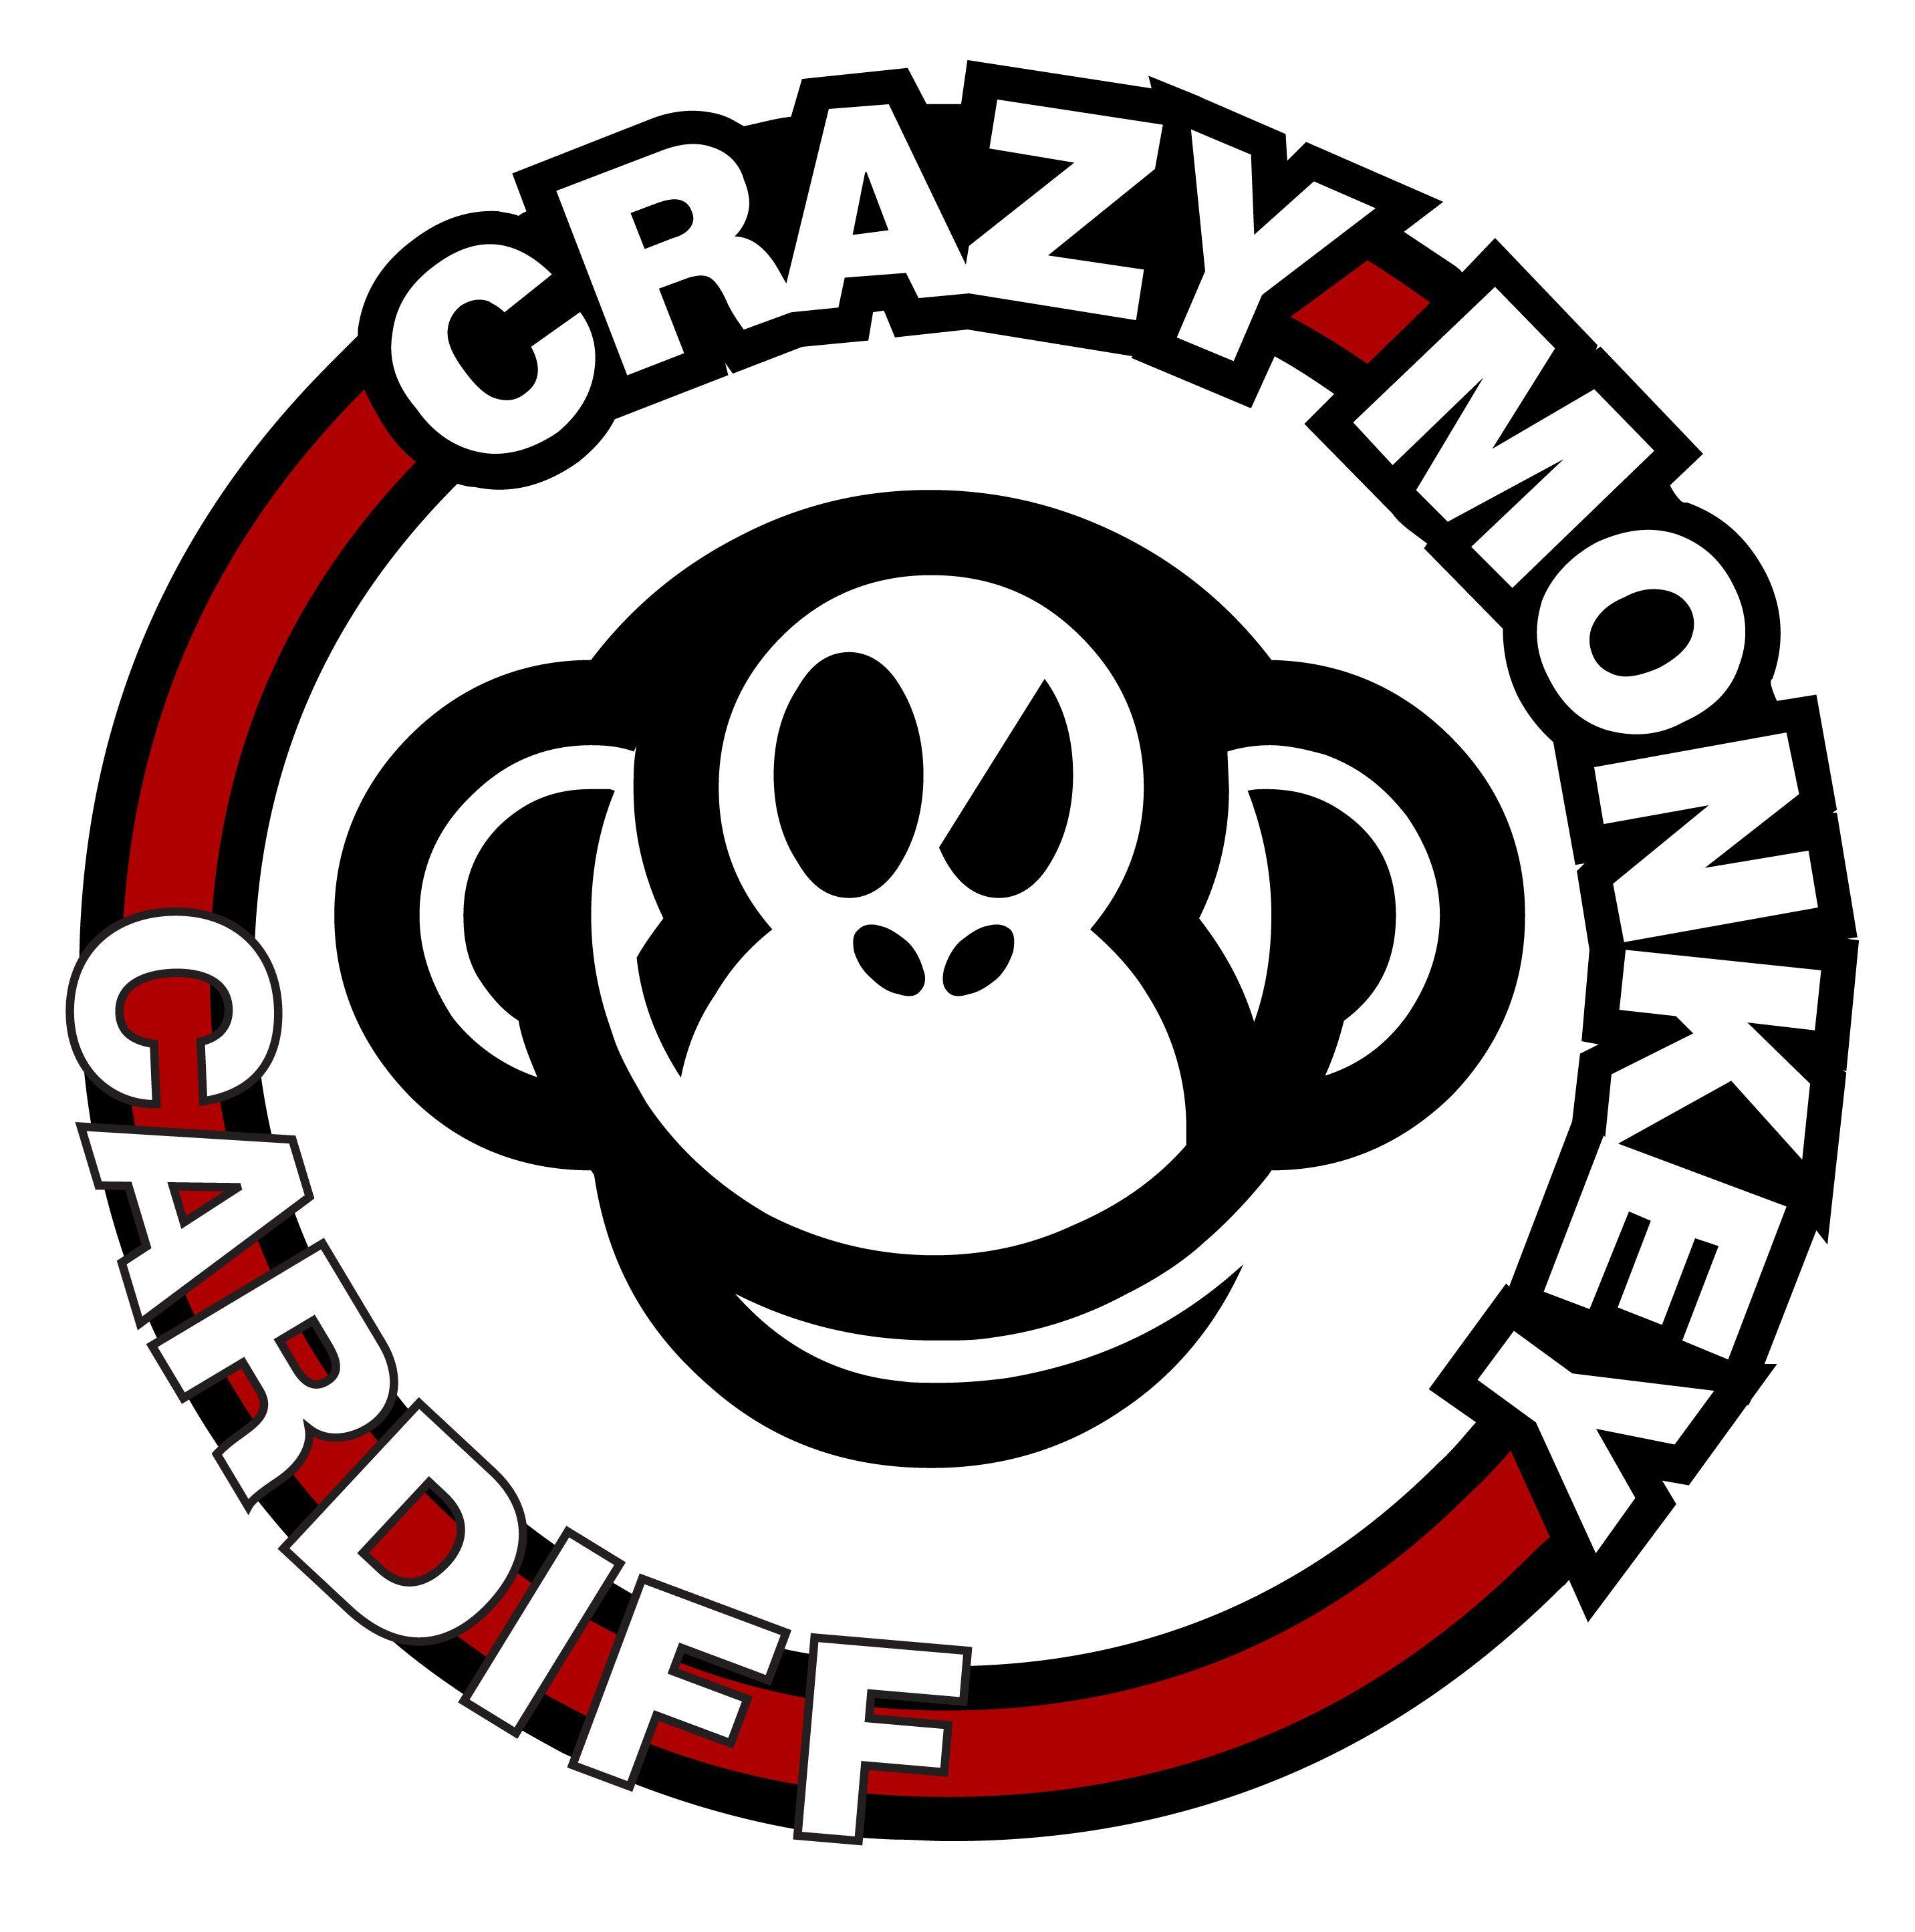 Crazymonkey Logo - Crazy Monkey Cardiff Blog. Learning to Live Mixed Martial Arts